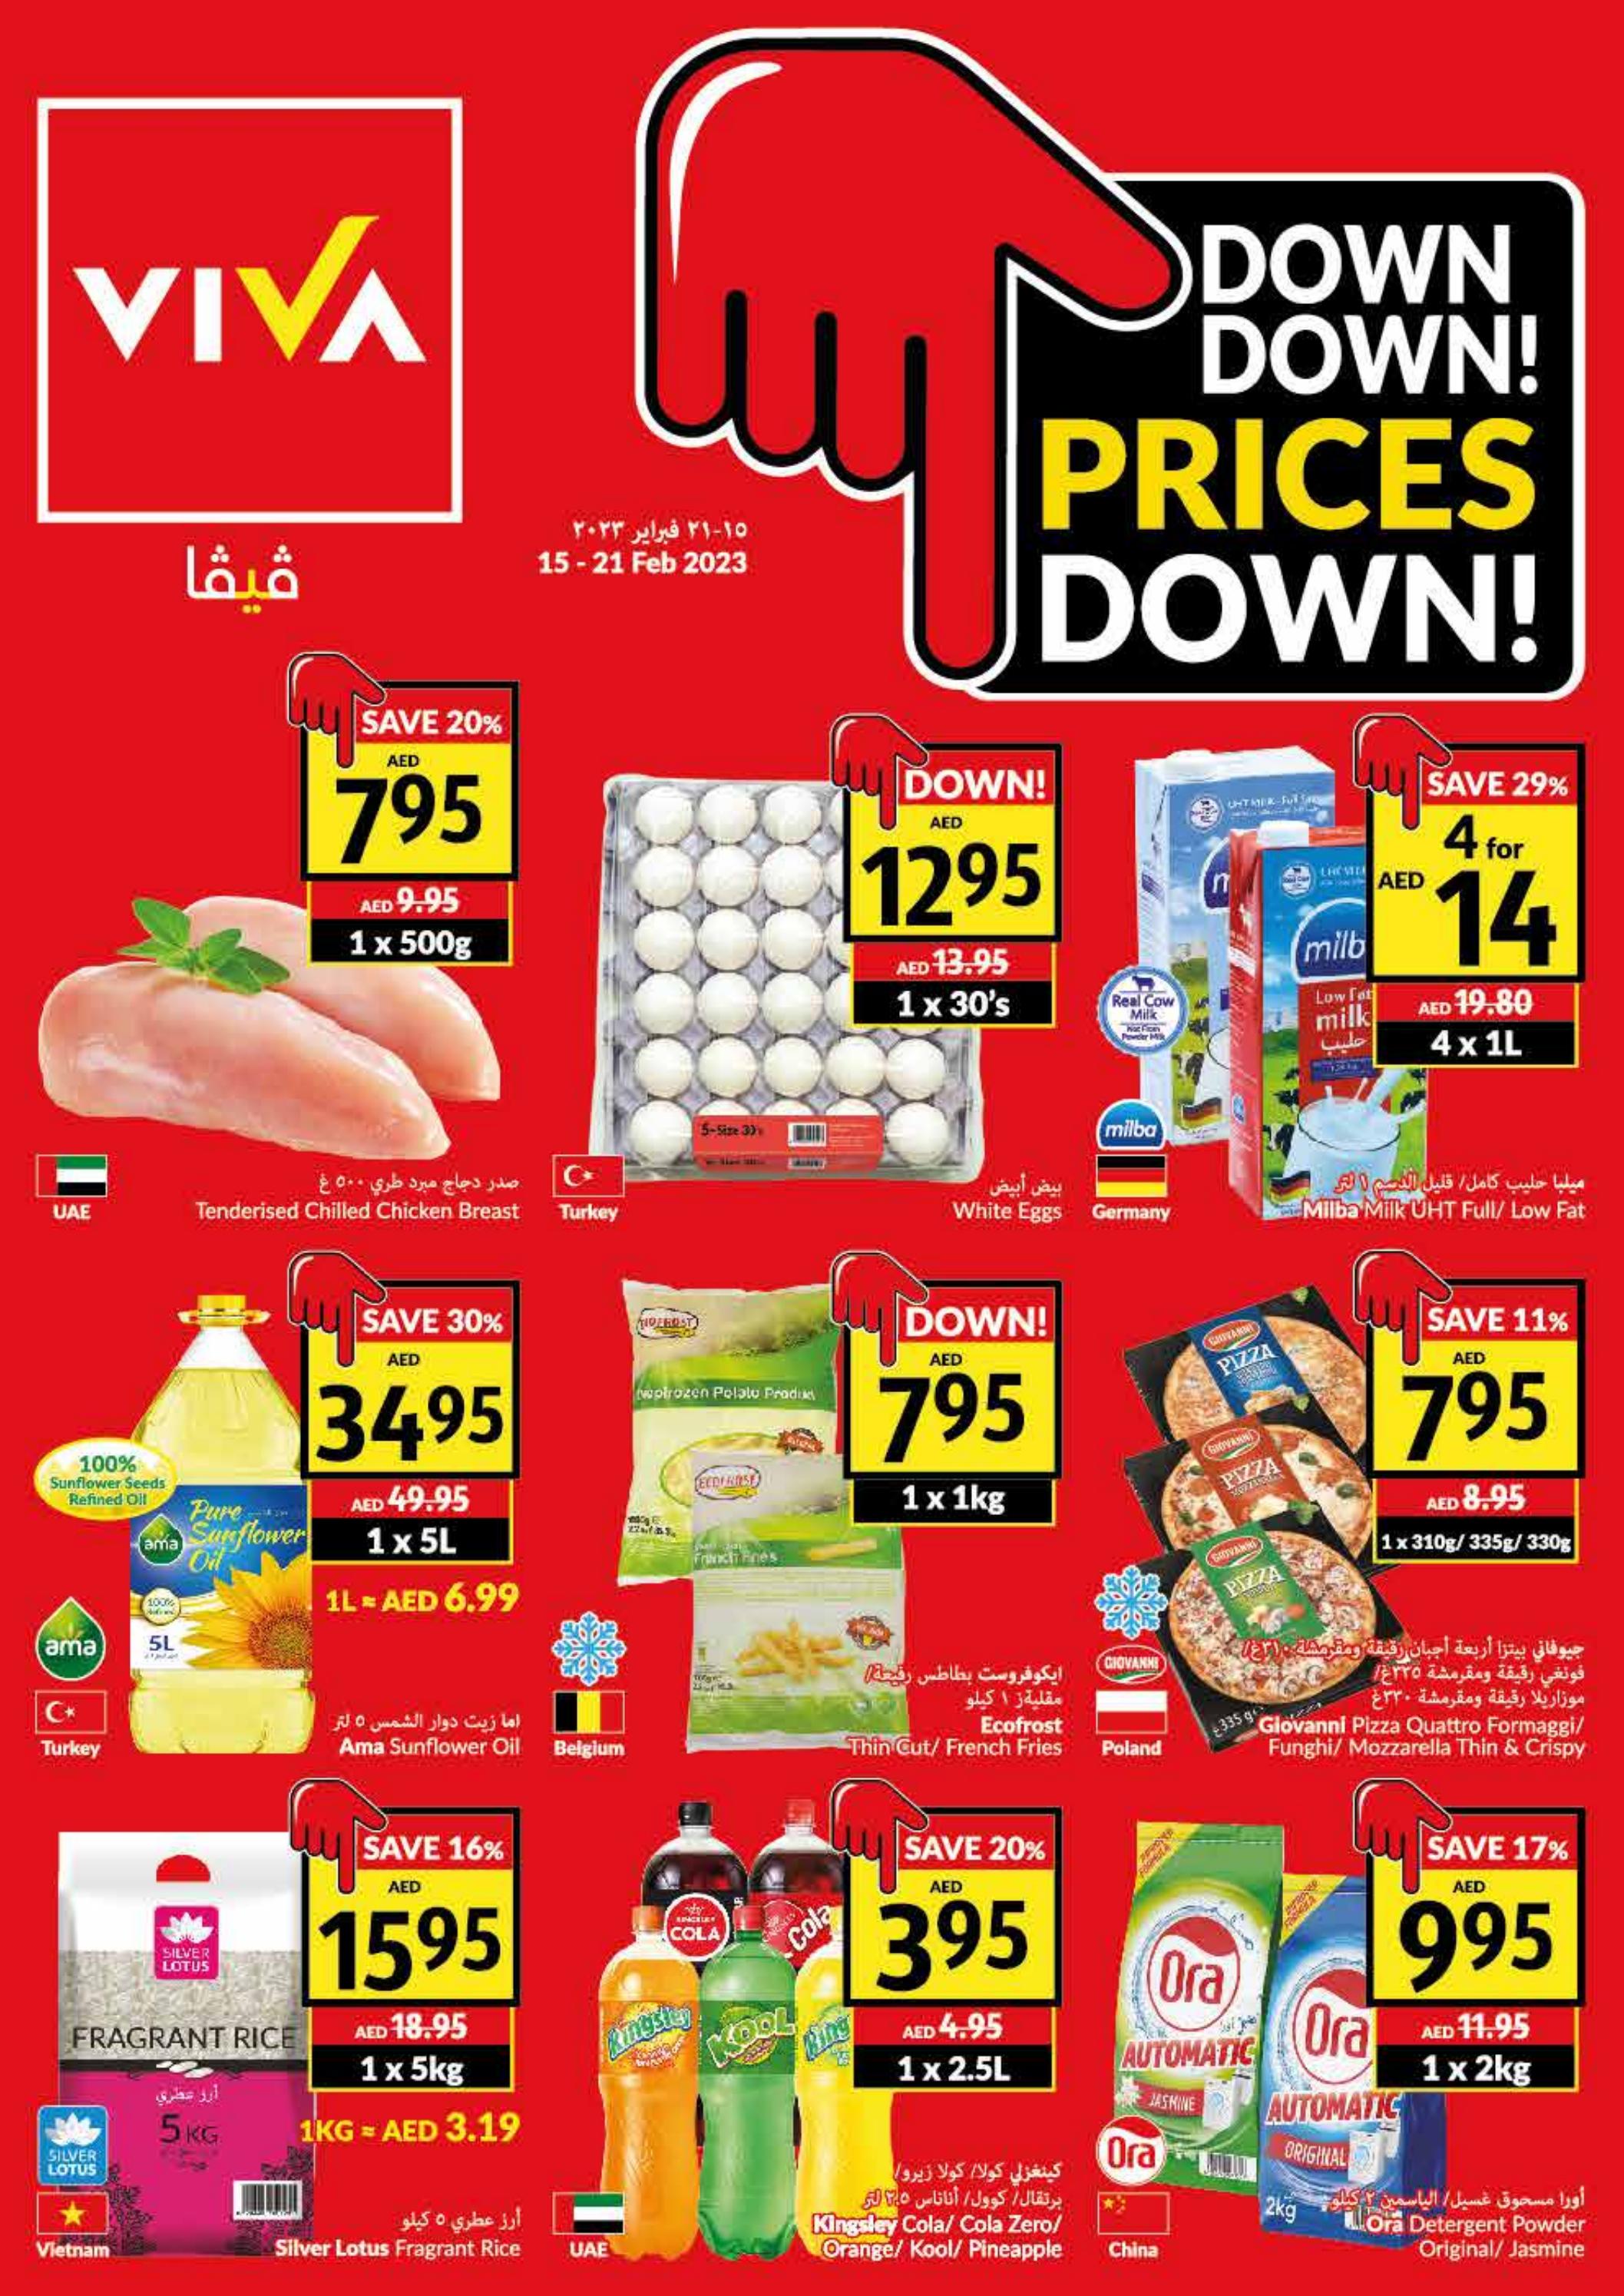 Viva Hypermarket prices down – Catalog